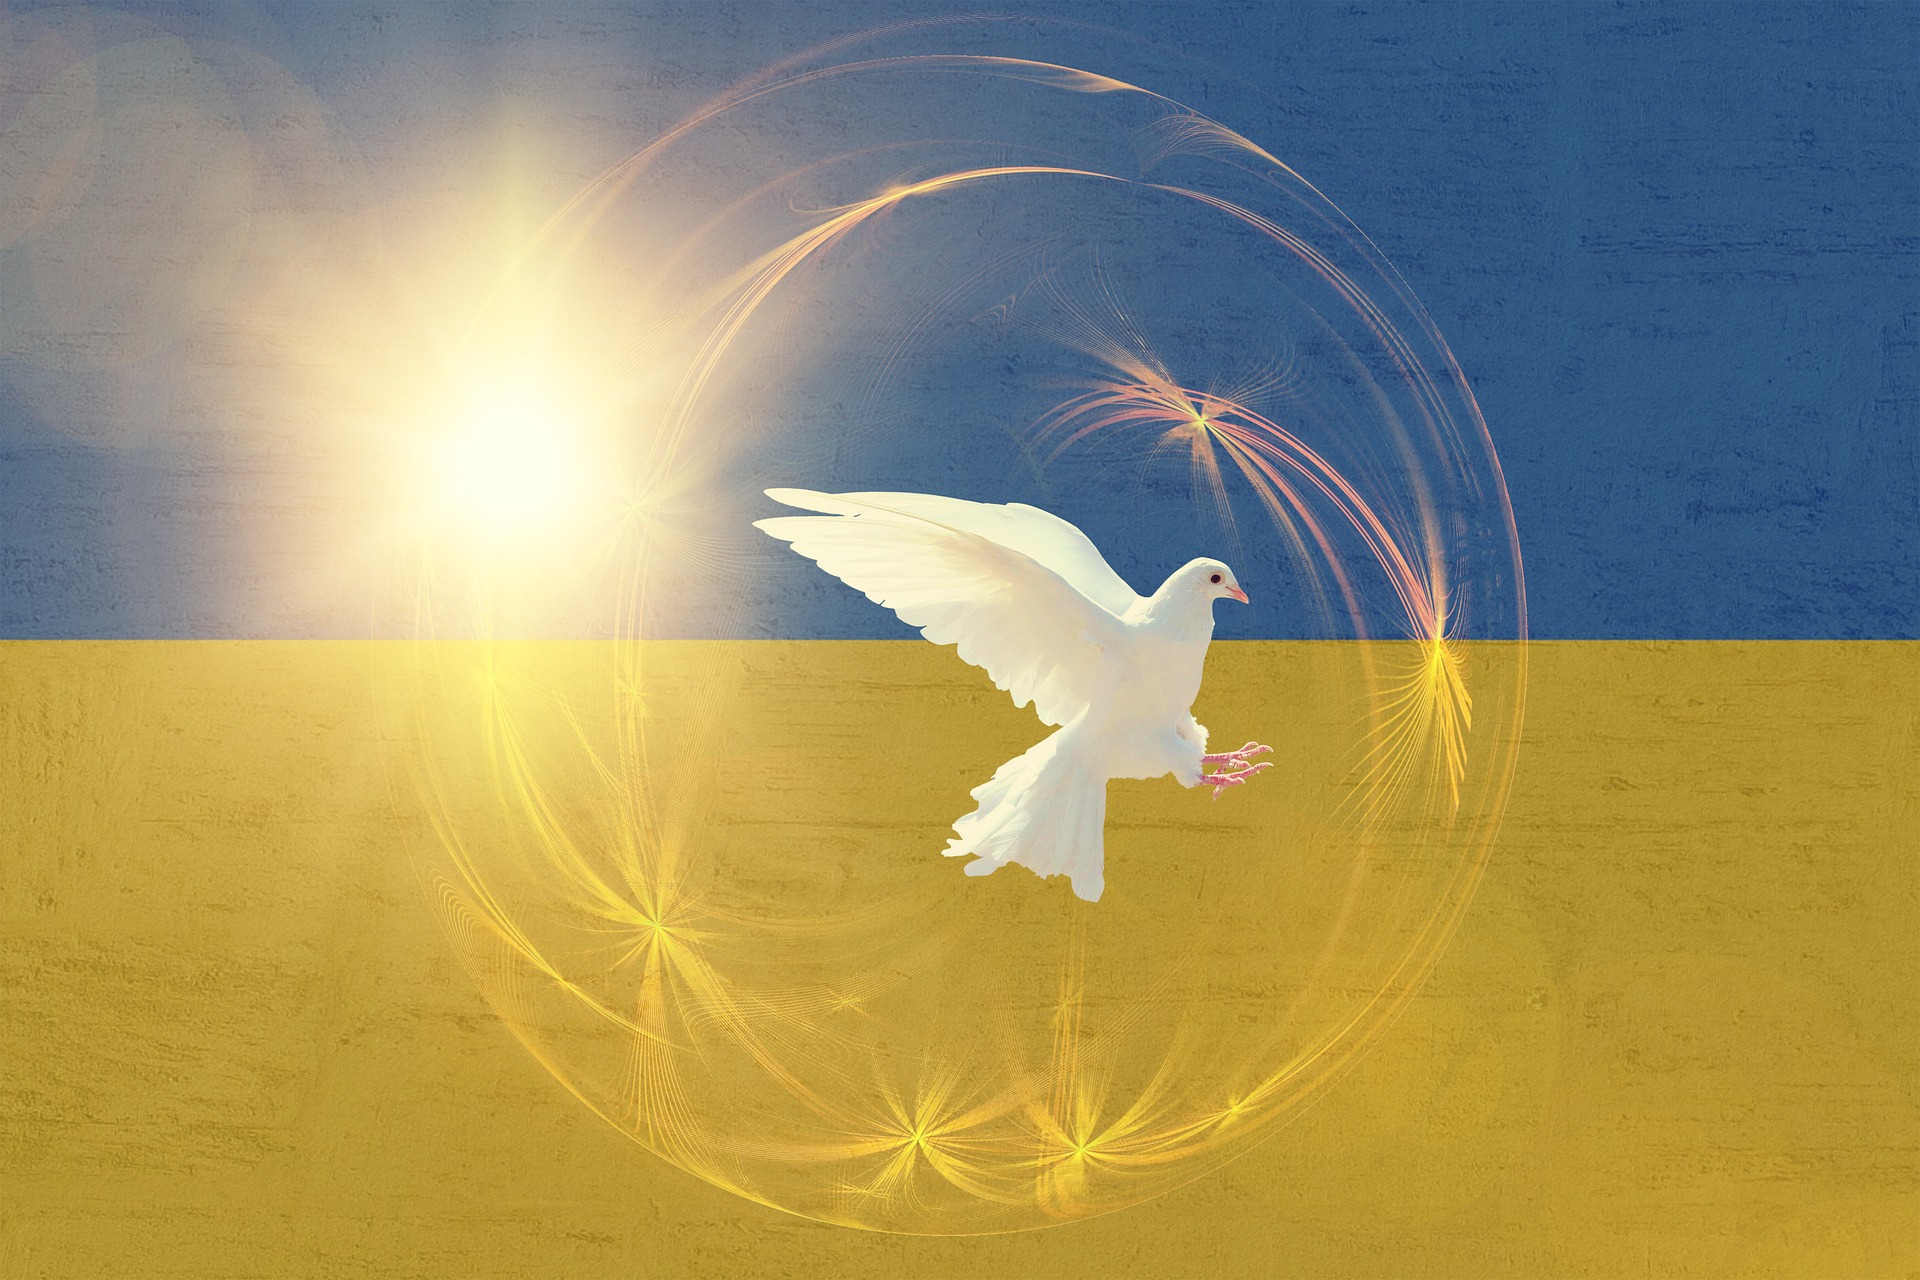 flaga Ukraina wojna pokój